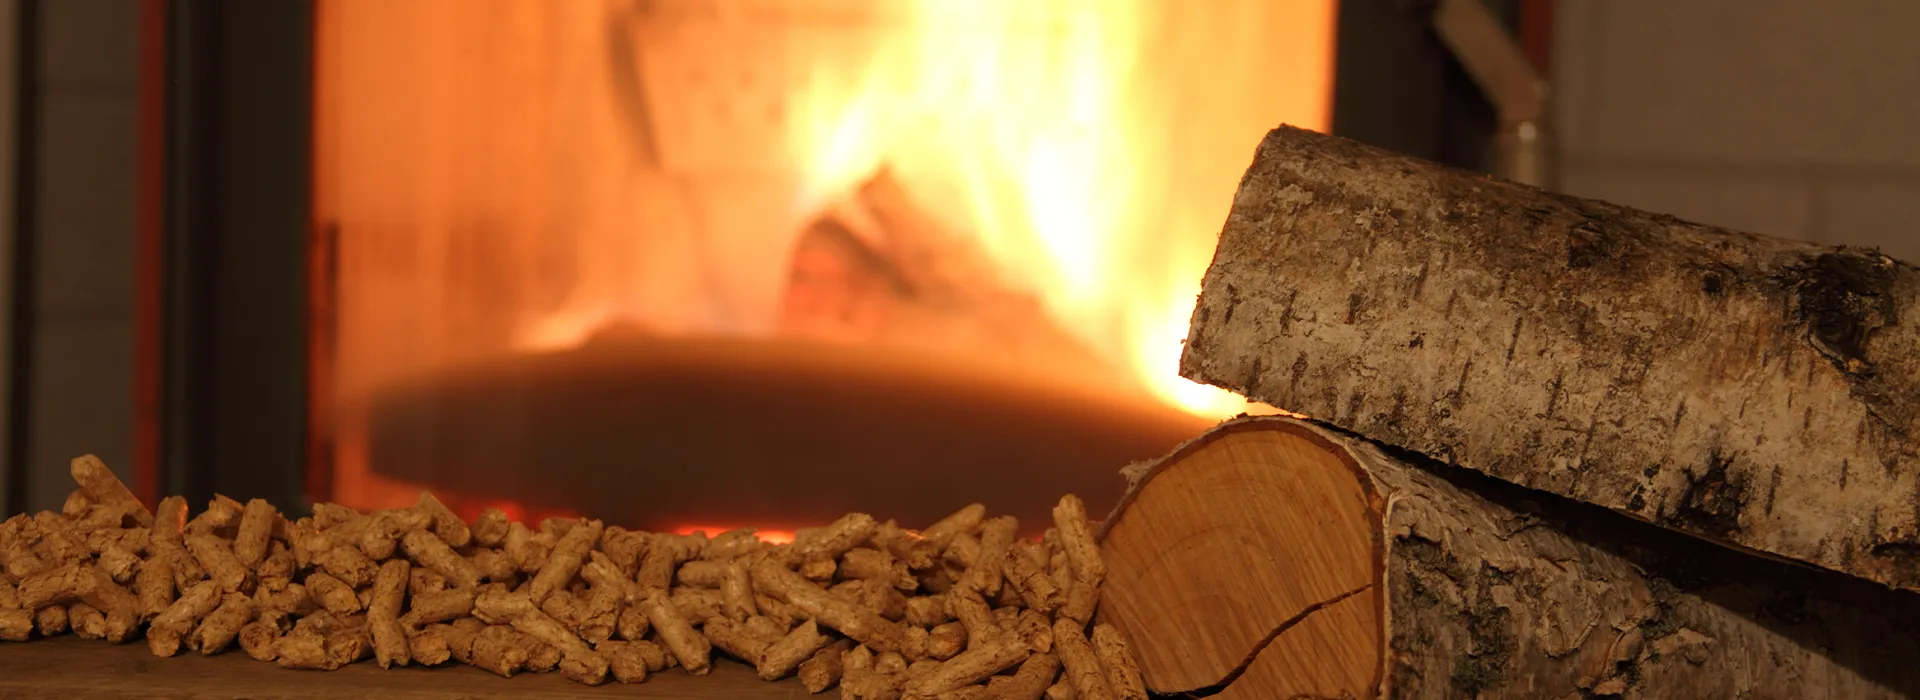 Le poêle à bois, une excellente alternative à la cheminée traditionnelle